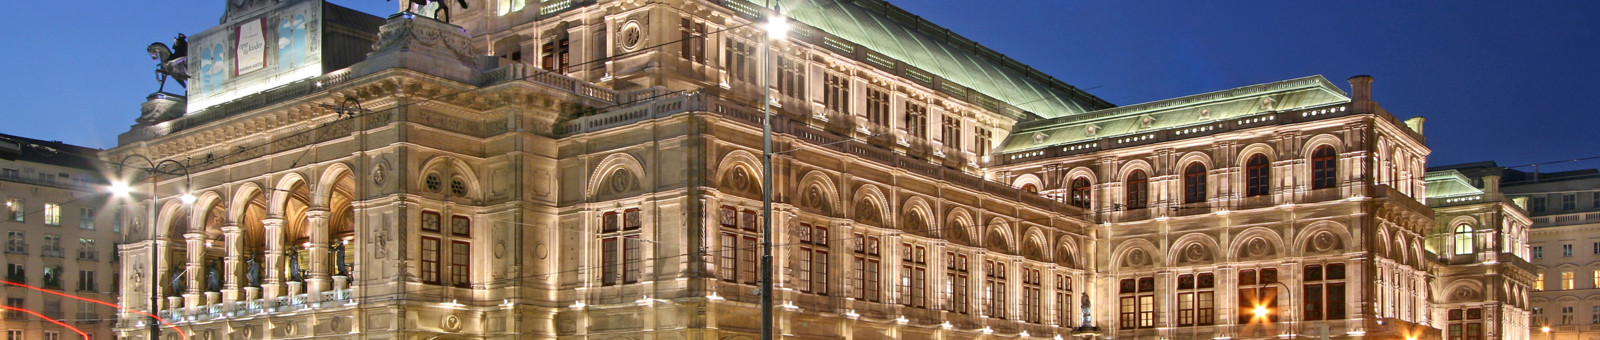     Opéra nationale de Vienne 